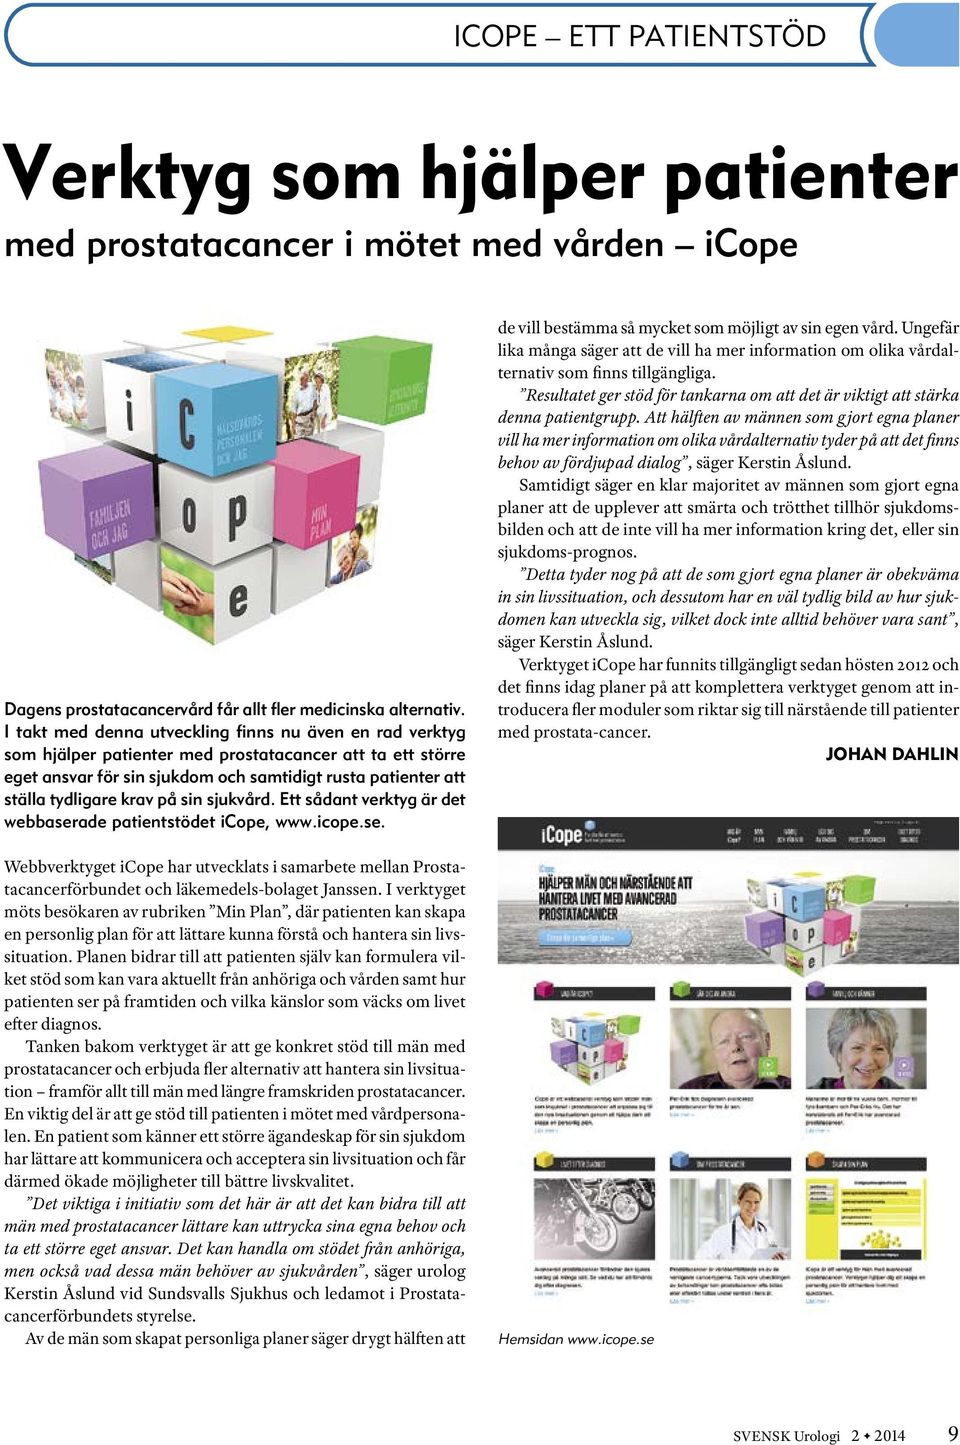 på sin sjukvård. Ett sådant verktyg är det webbaserade patientstödet icope, www.icope.se. Webbverktyget icope har utvecklats i samarbete mellan Prostatacancerförbundet och läkemedels-bolaget Janssen.